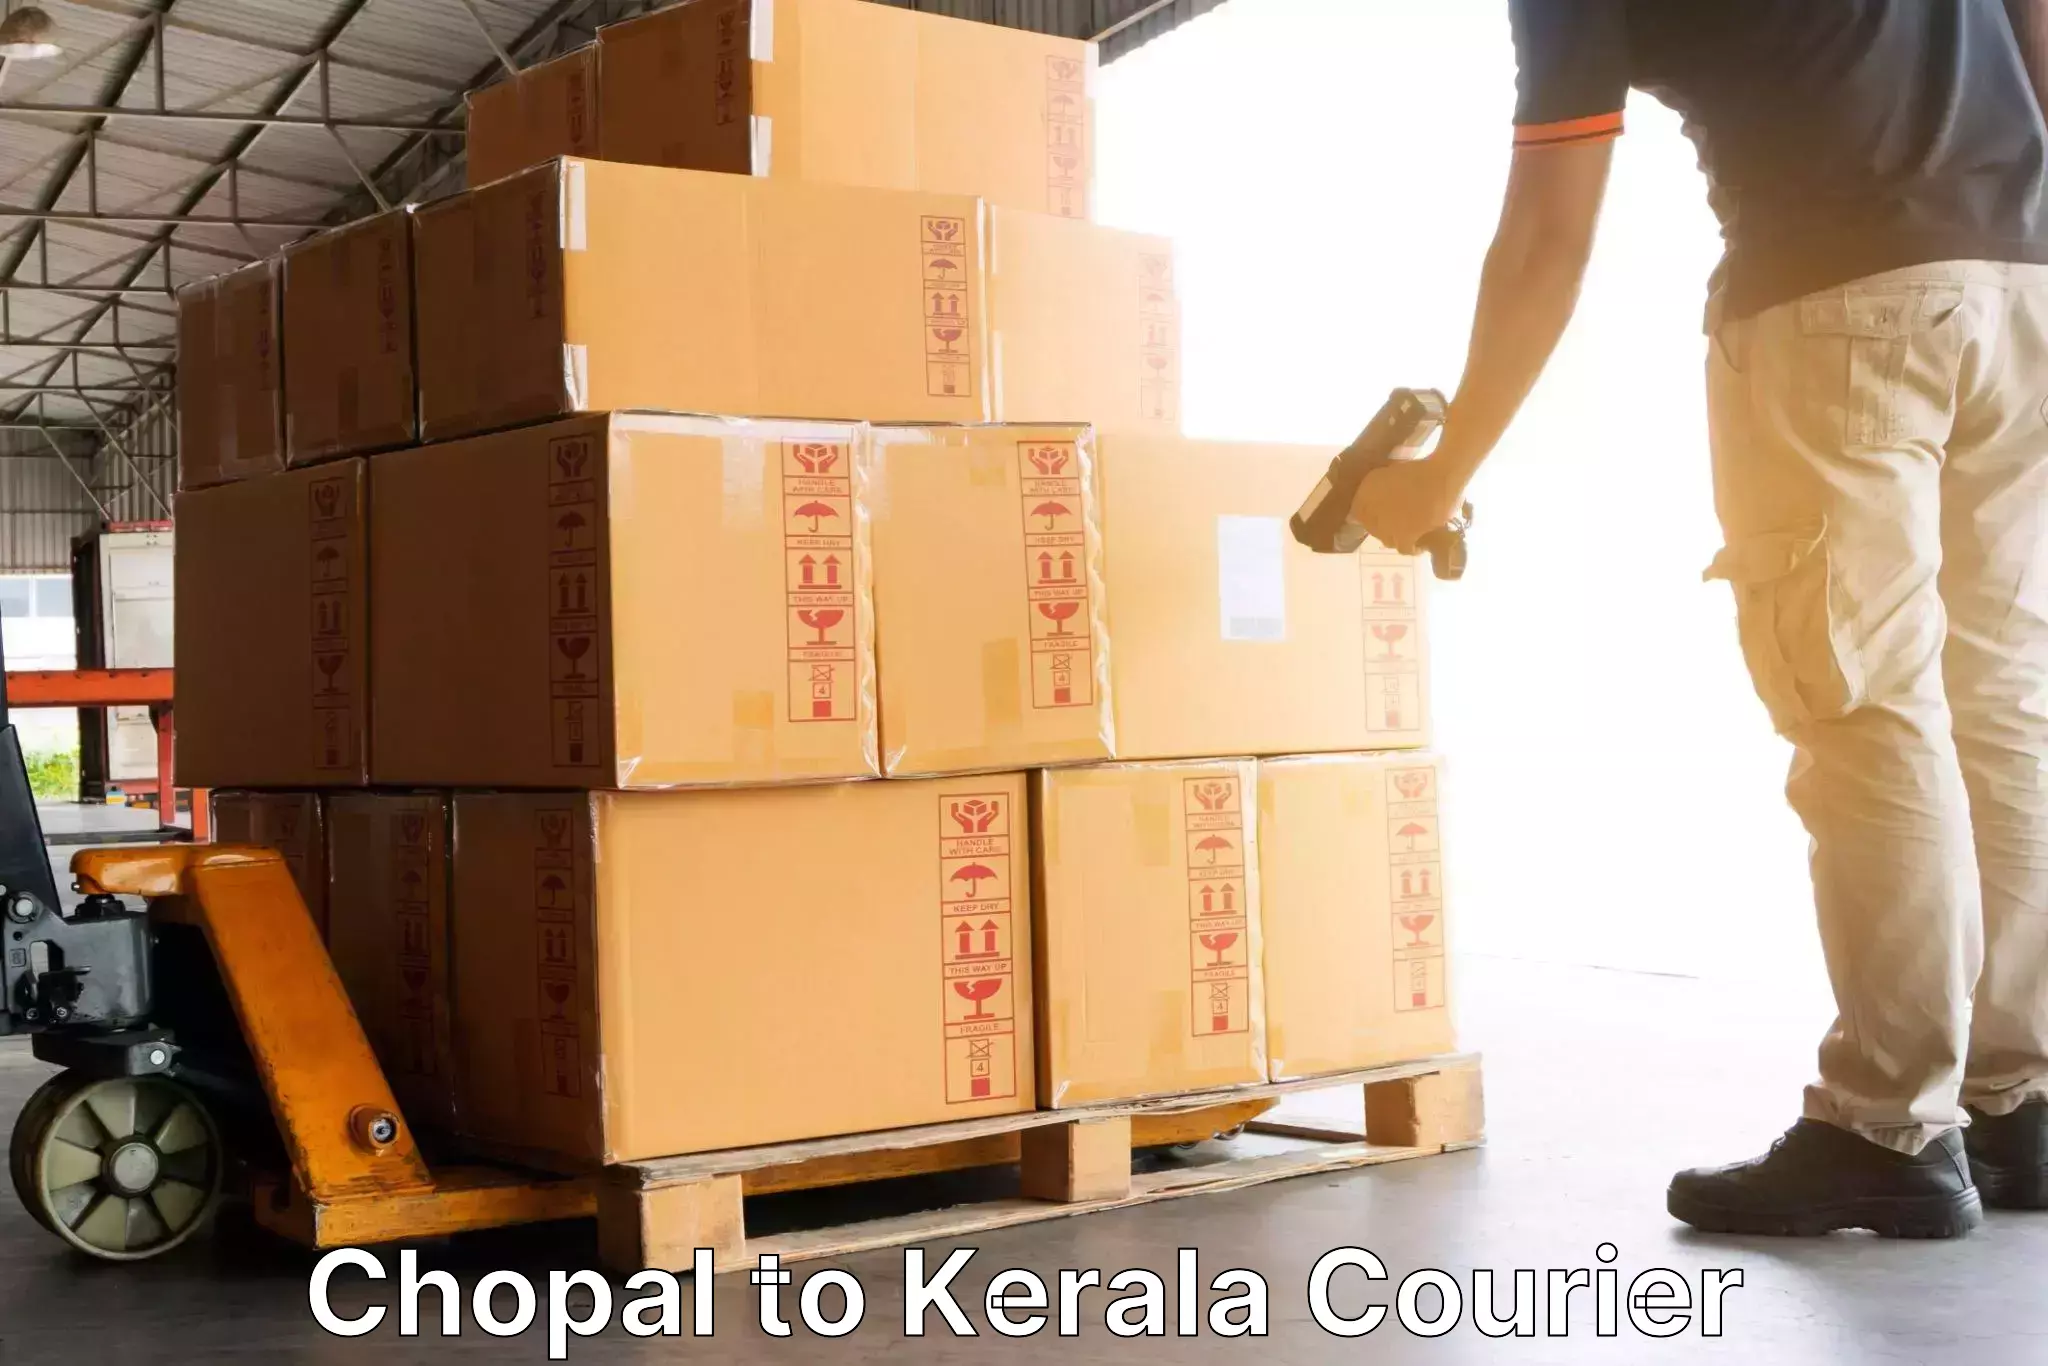 Efficient parcel service Chopal to Munnar